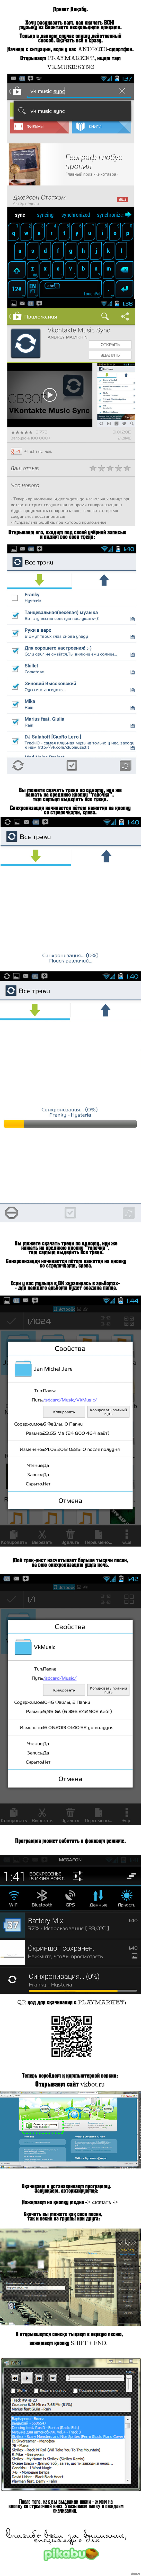 Как Скачать Всю Музыку Сразу Из Вконтакте. Windows&Android.